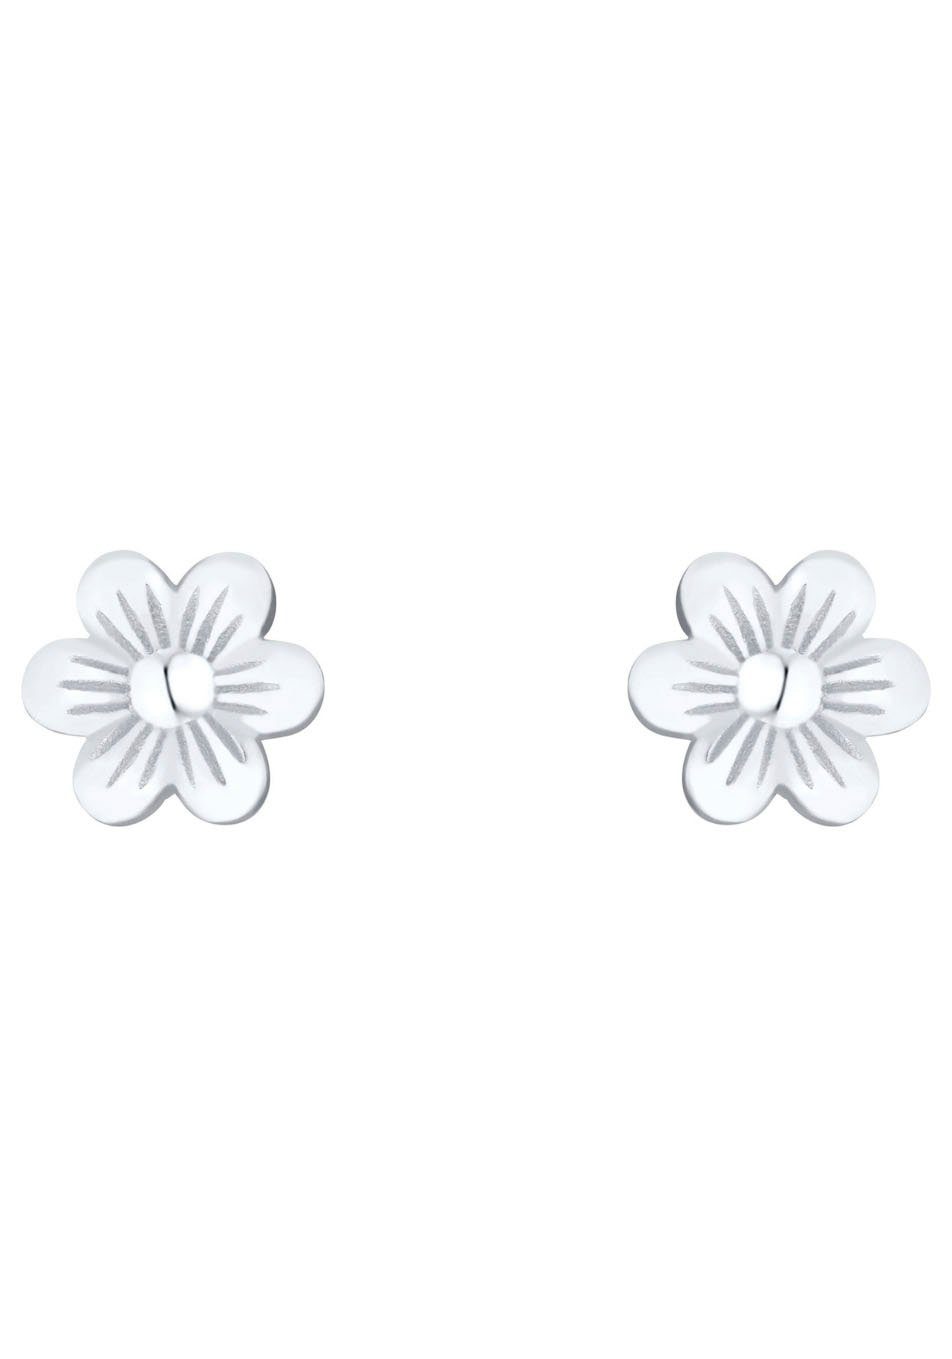 Die haben Lillifee mm Ohrstecker Flower, für Blume Prinzessin 2035996, Paar Größe von Kinder ca. mit 5 eine Stecker